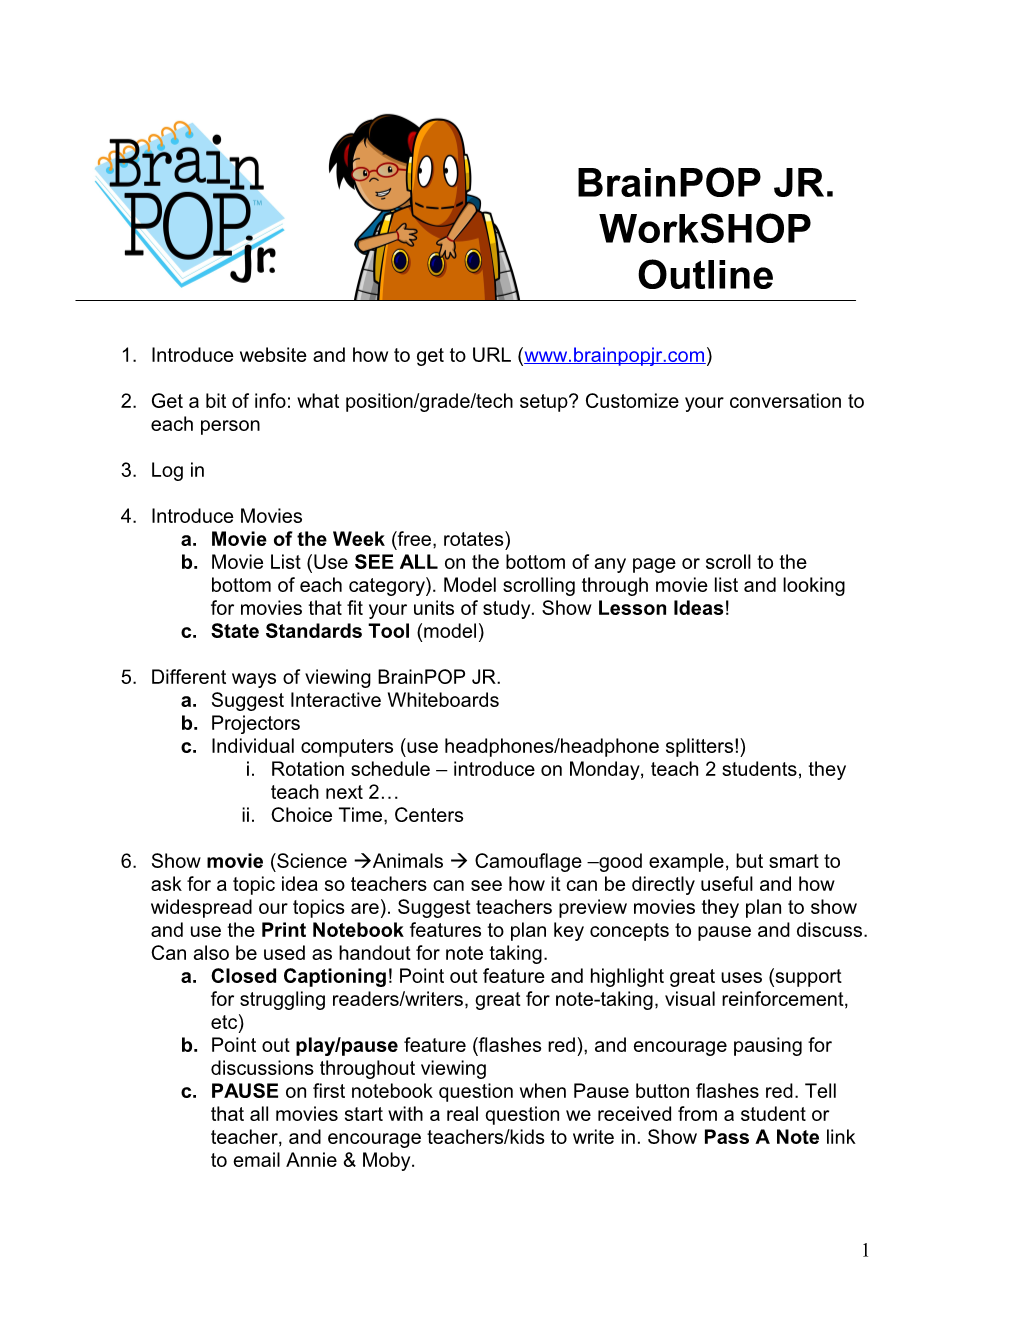 Brainpop JR. Workshop Outline